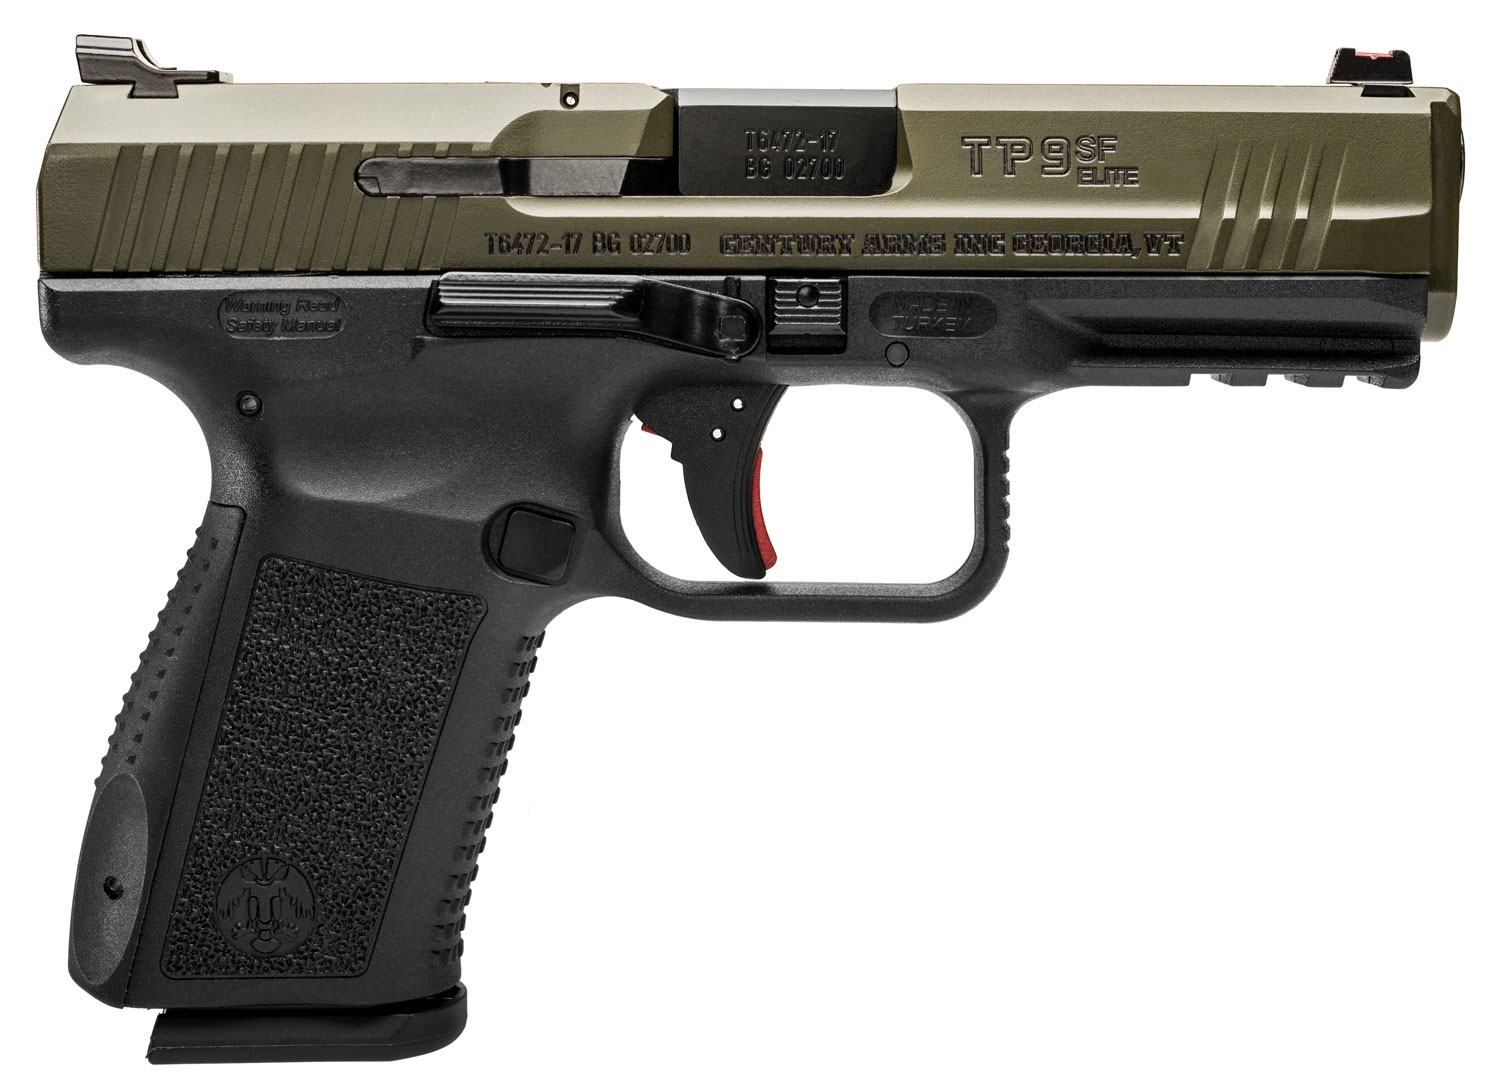 canik-tp9sf-elite-9mm-pistol-4-2-barrel-black-frame-od-green-slide-2